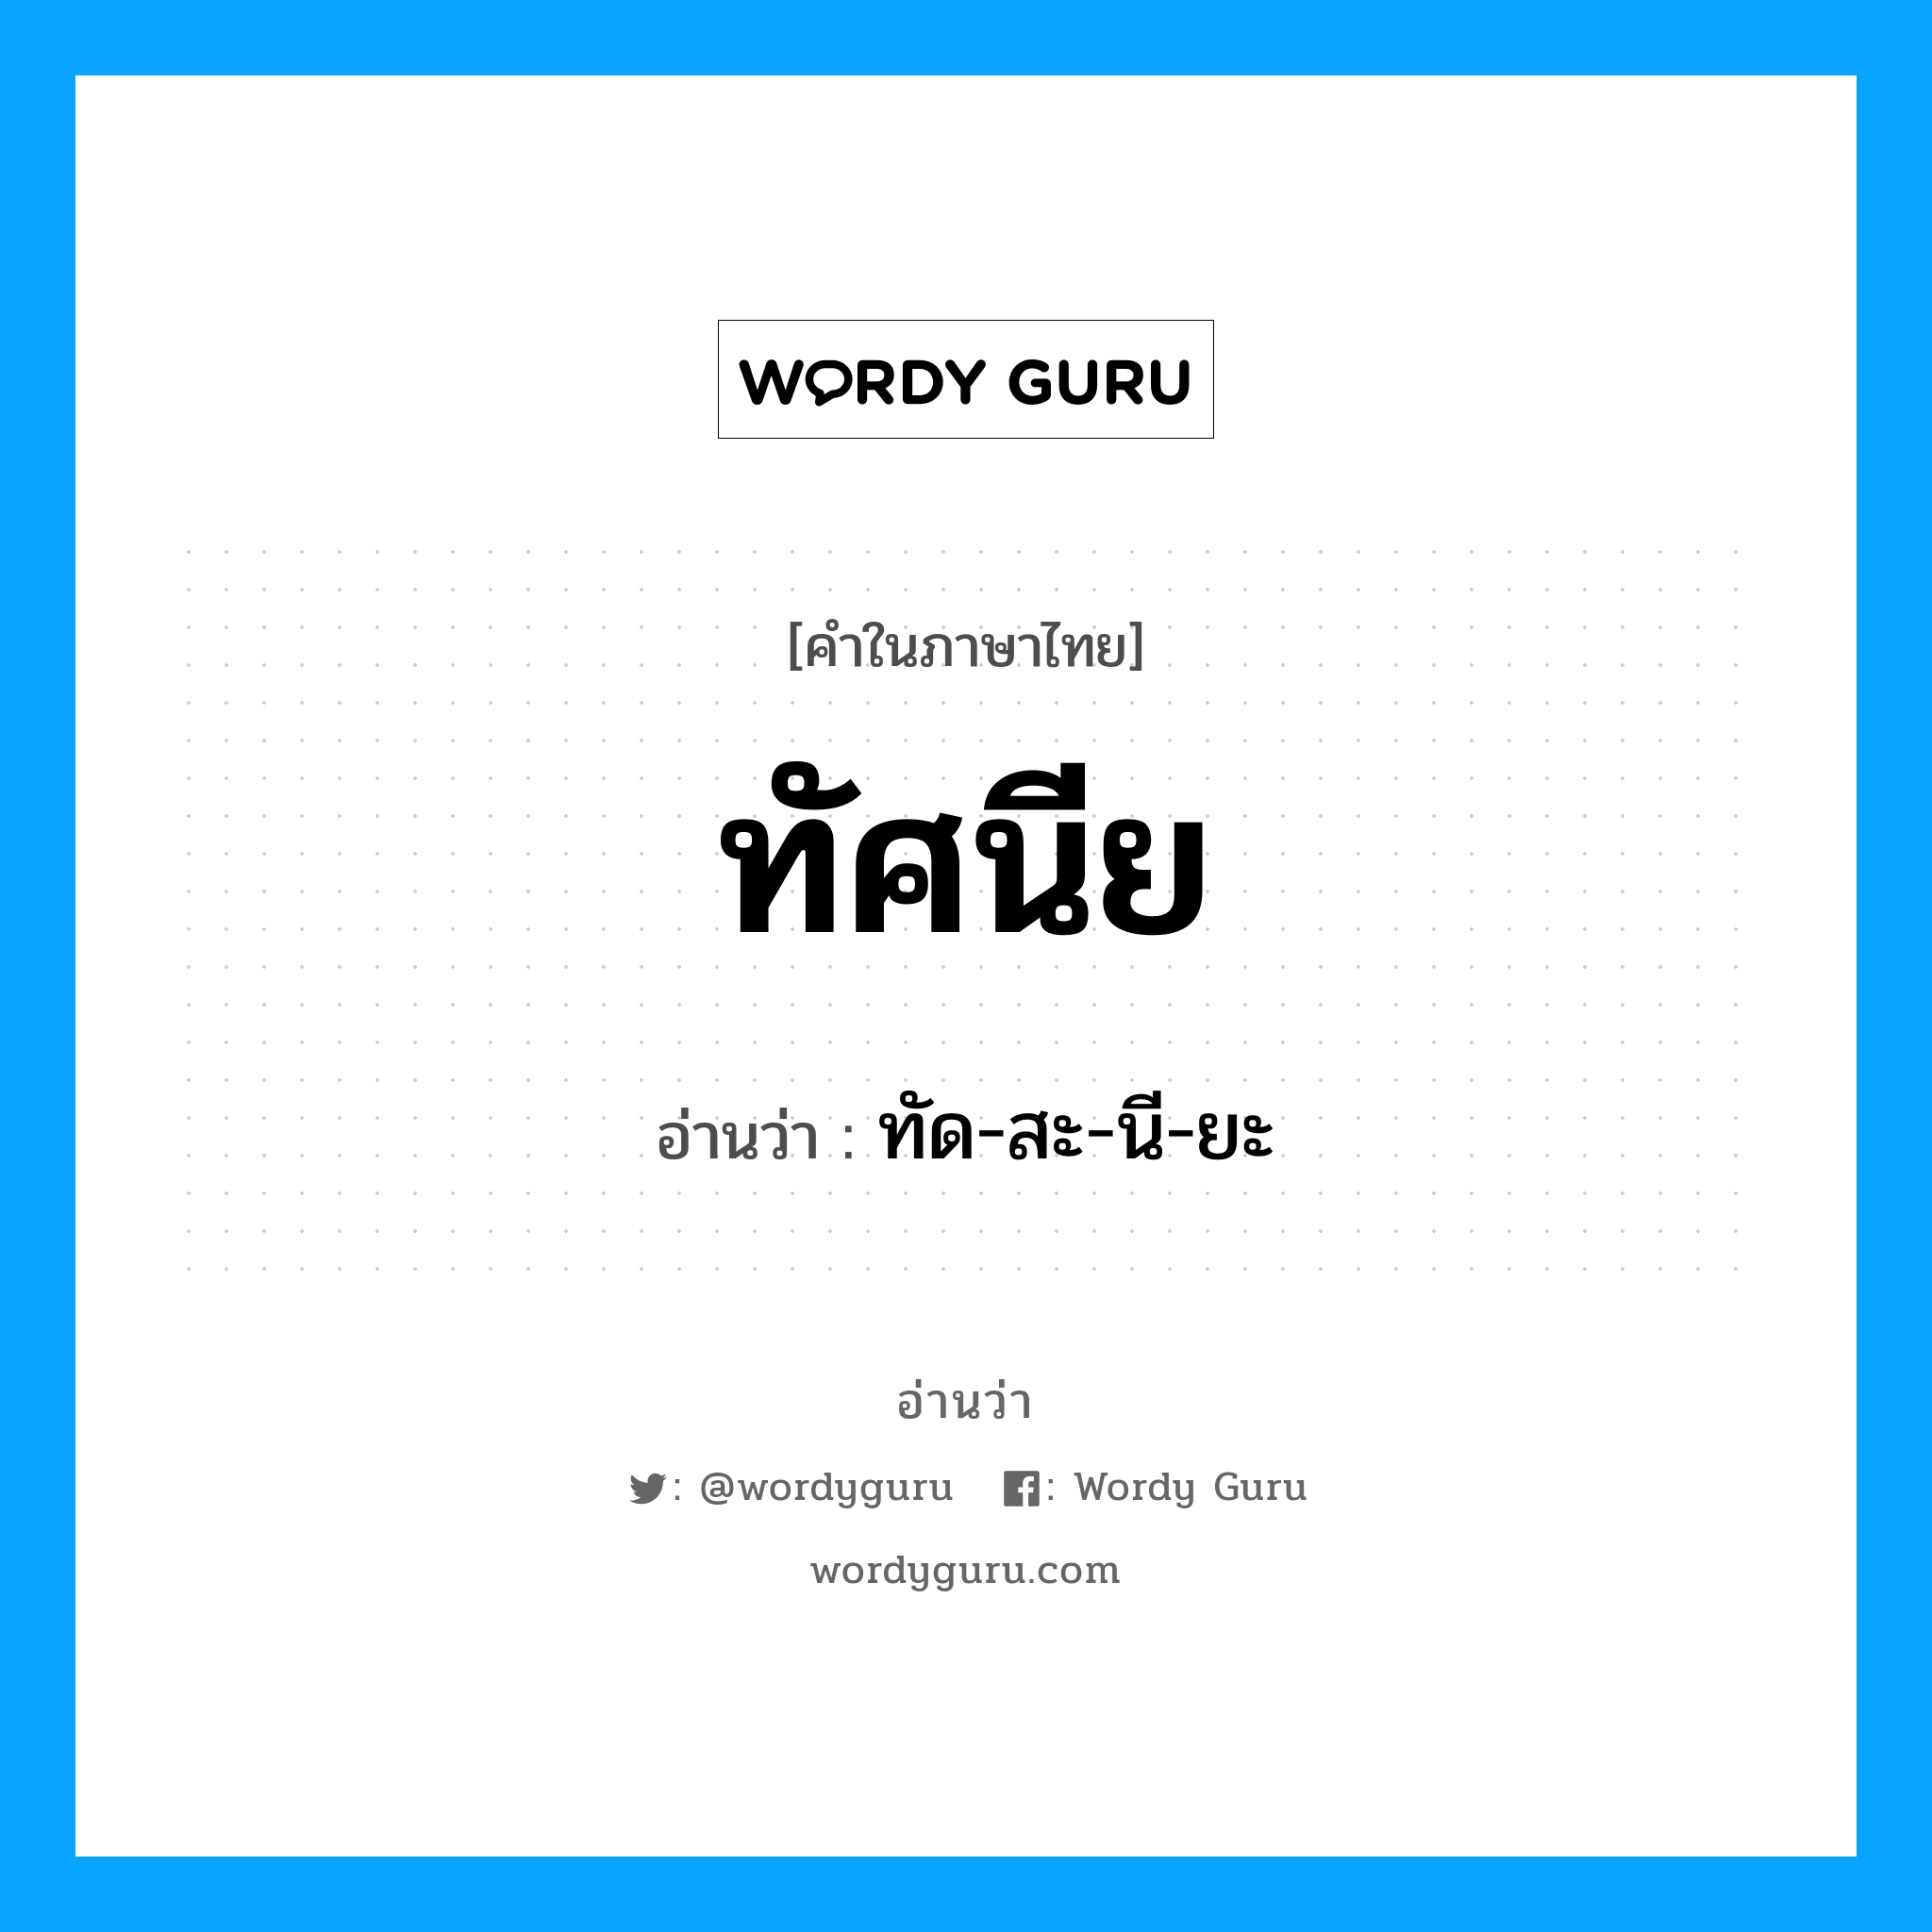 ทัด-สะ-นี-ยะ เป็นคำอ่านของคำไหน?, คำในภาษาไทย ทัด-สะ-นี-ยะ อ่านว่า ทัศนีย